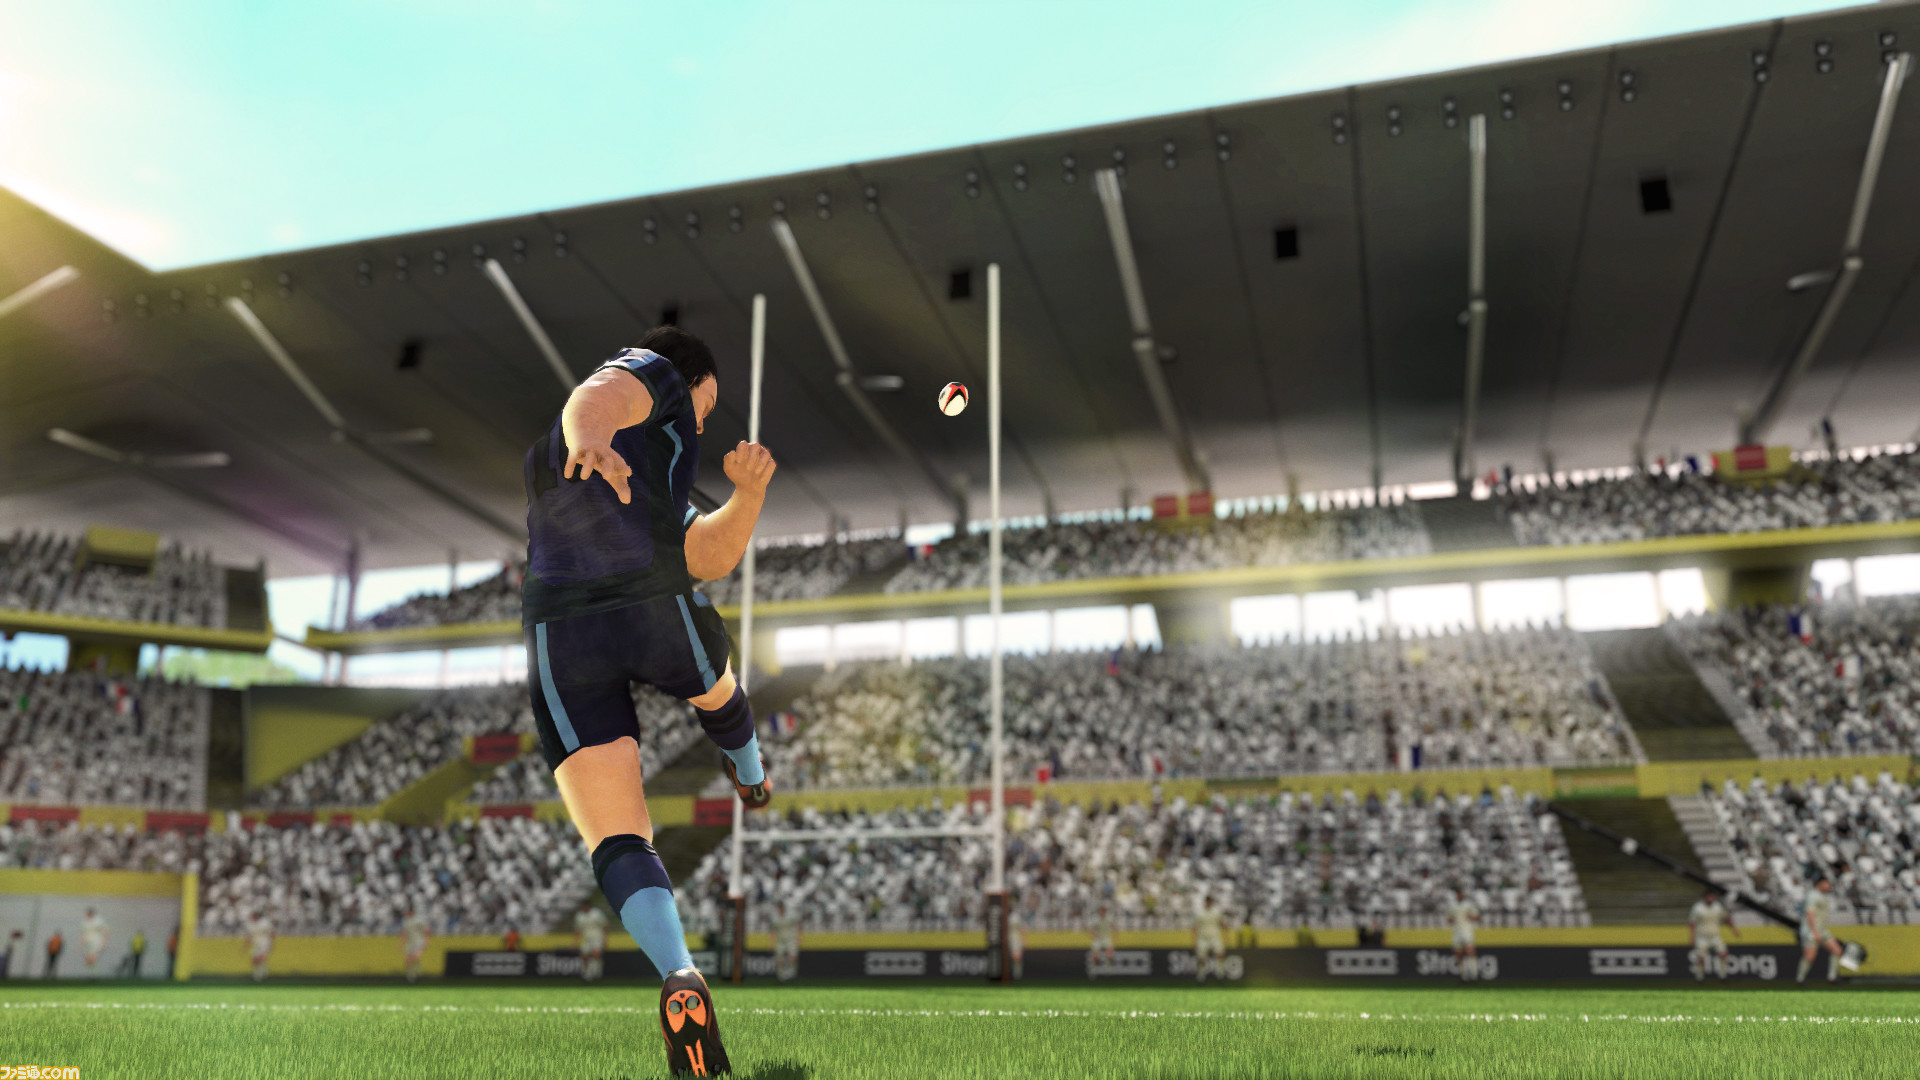 Ps5 Ps4 Rugby22 が22年3月3日に発売決定 世界各国のトップ選手を操作して夢のマッチが楽しめる本格ラグビーゲーム ゲーム エンタメ最新情報のファミ通 Com